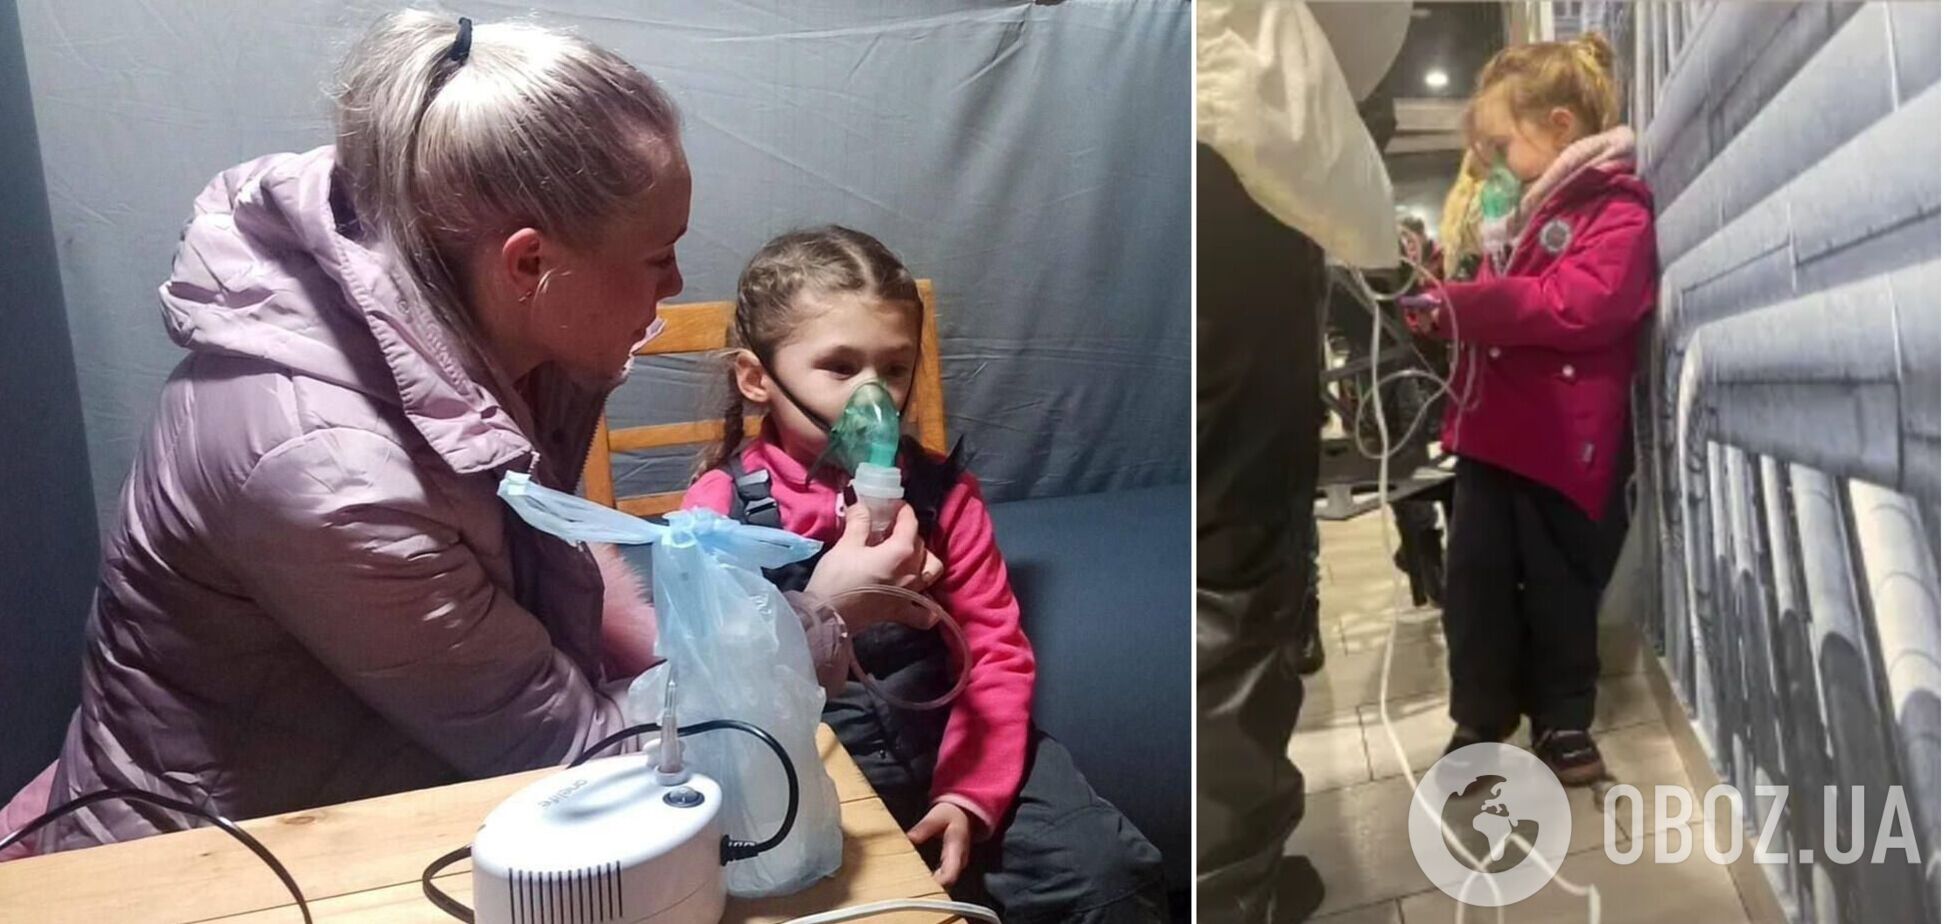 'Росія забрала дитинство': в Ірпені мама привела доньку у 'Пункт незламності', щоб підключити інгалятор. Фото